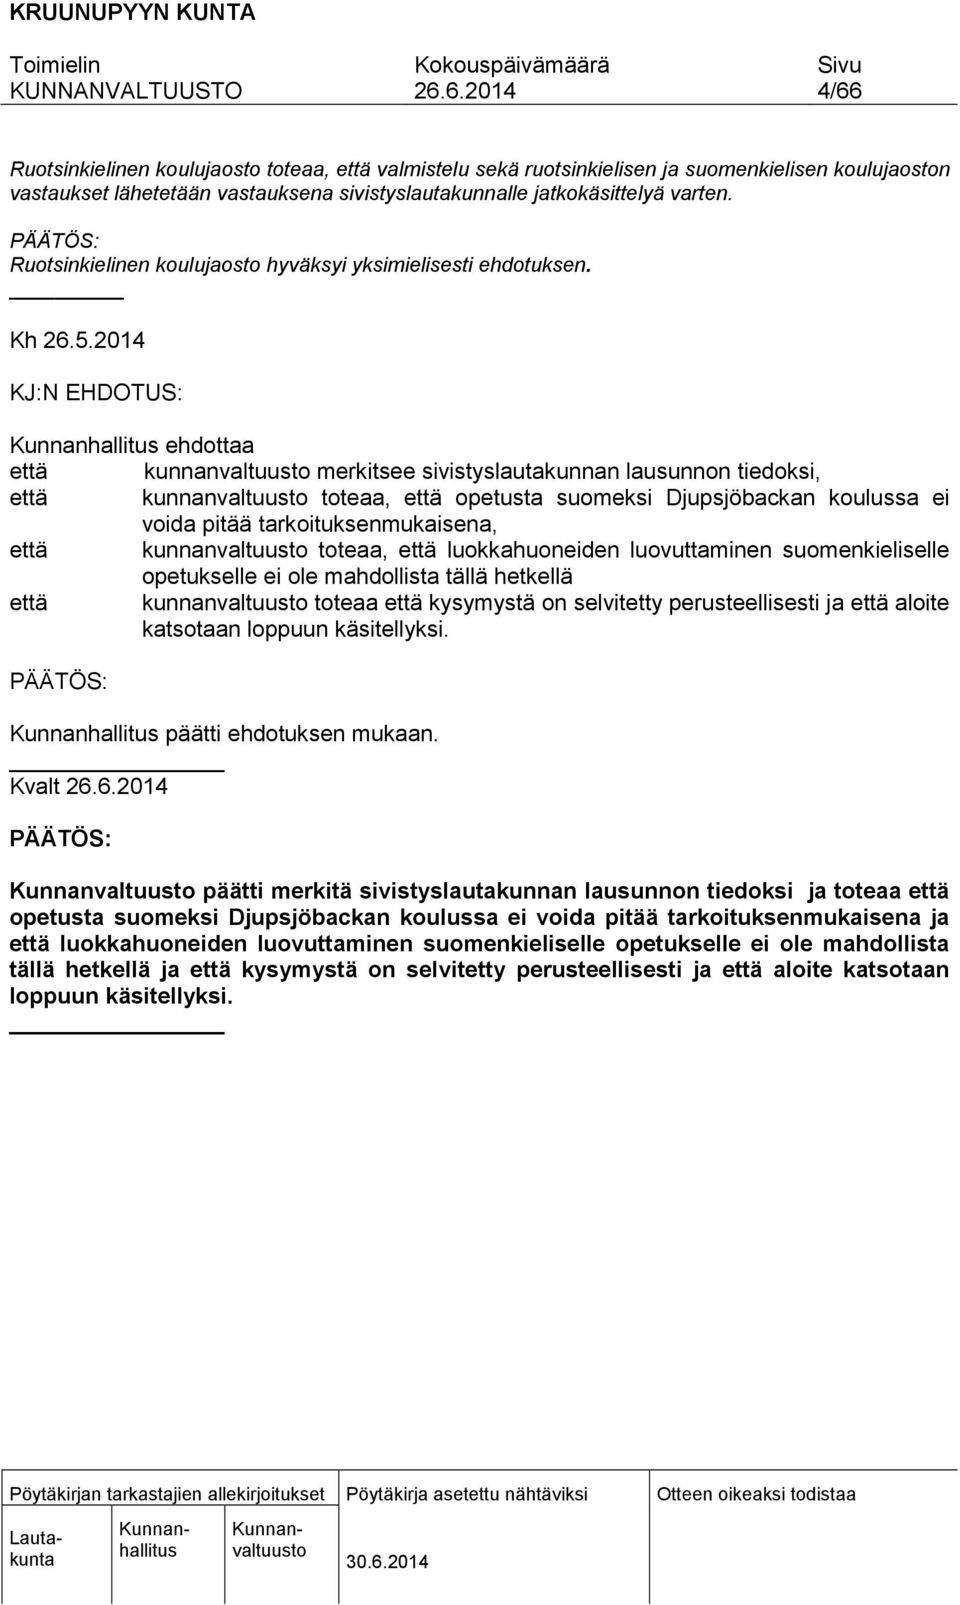 2014 KJ:N EHDOTUS: ehdottaa että kunnanvaltuusto merkitsee sivistyslautakunnan lausunnon tiedoksi, että kunnanvaltuusto toteaa, että opetusta suomeksi Djupsjöbackan koulussa ei voida pitää